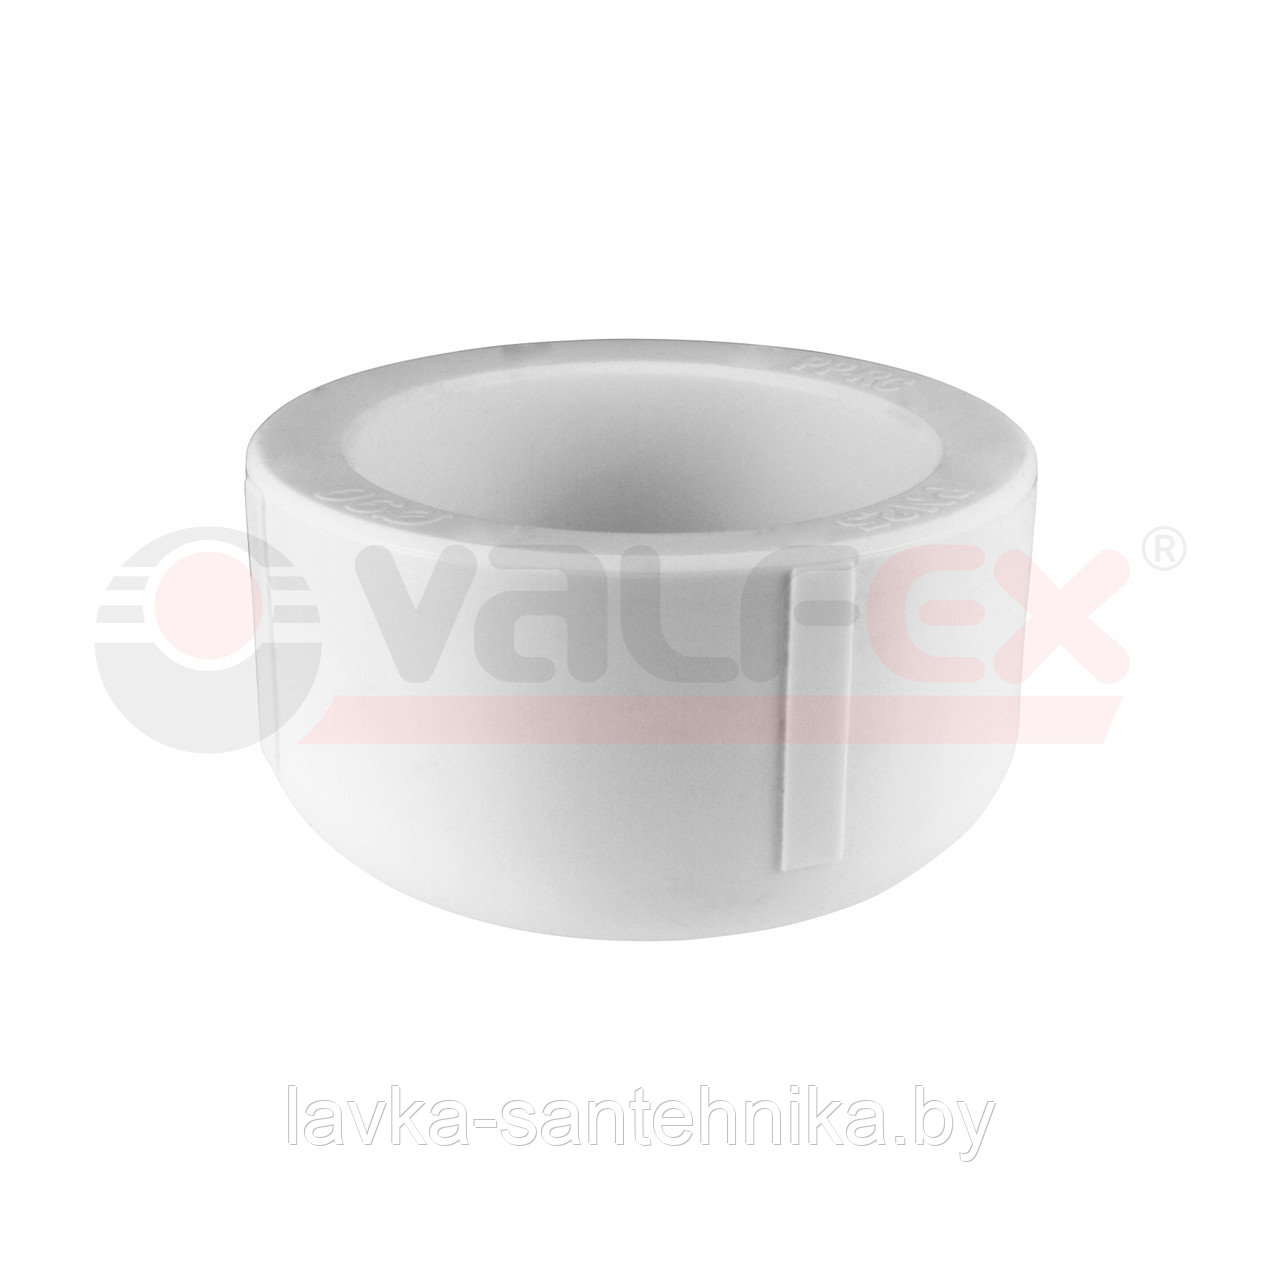 Заглушка 40 мм полипропиленовая Valfex (цвет: серый)